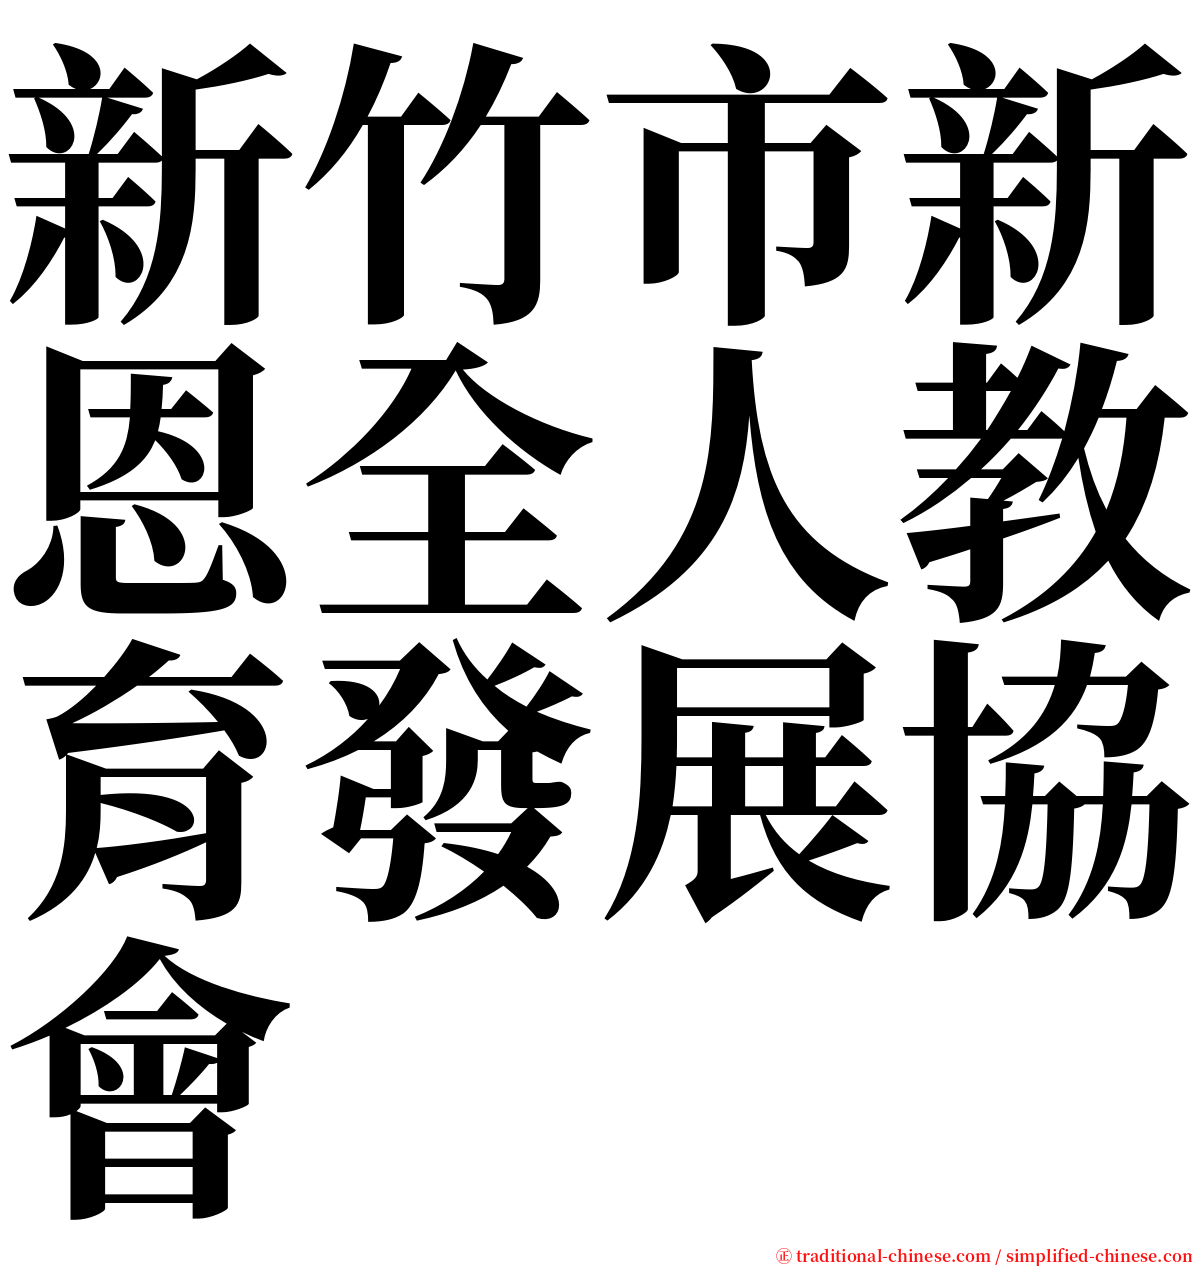 新竹市新恩全人教育發展協會 serif font